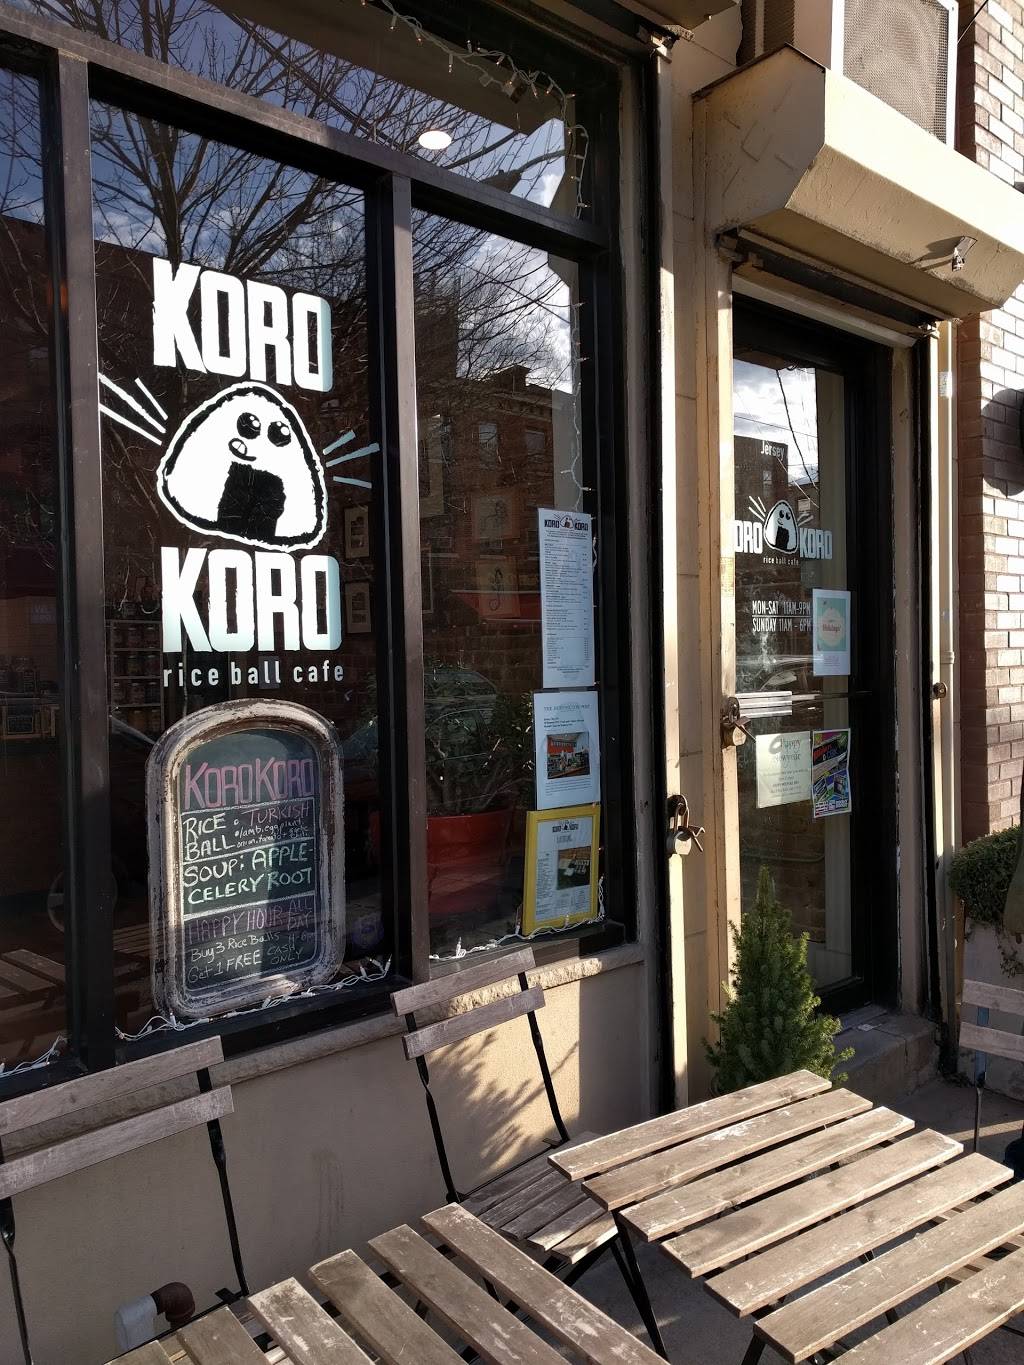 Koro Koro Rice Ball Cafe | restaurant | 538 Jersey Ave, Jersey City, NJ 07302, USA | 2014322033 OR +1 201-432-2033